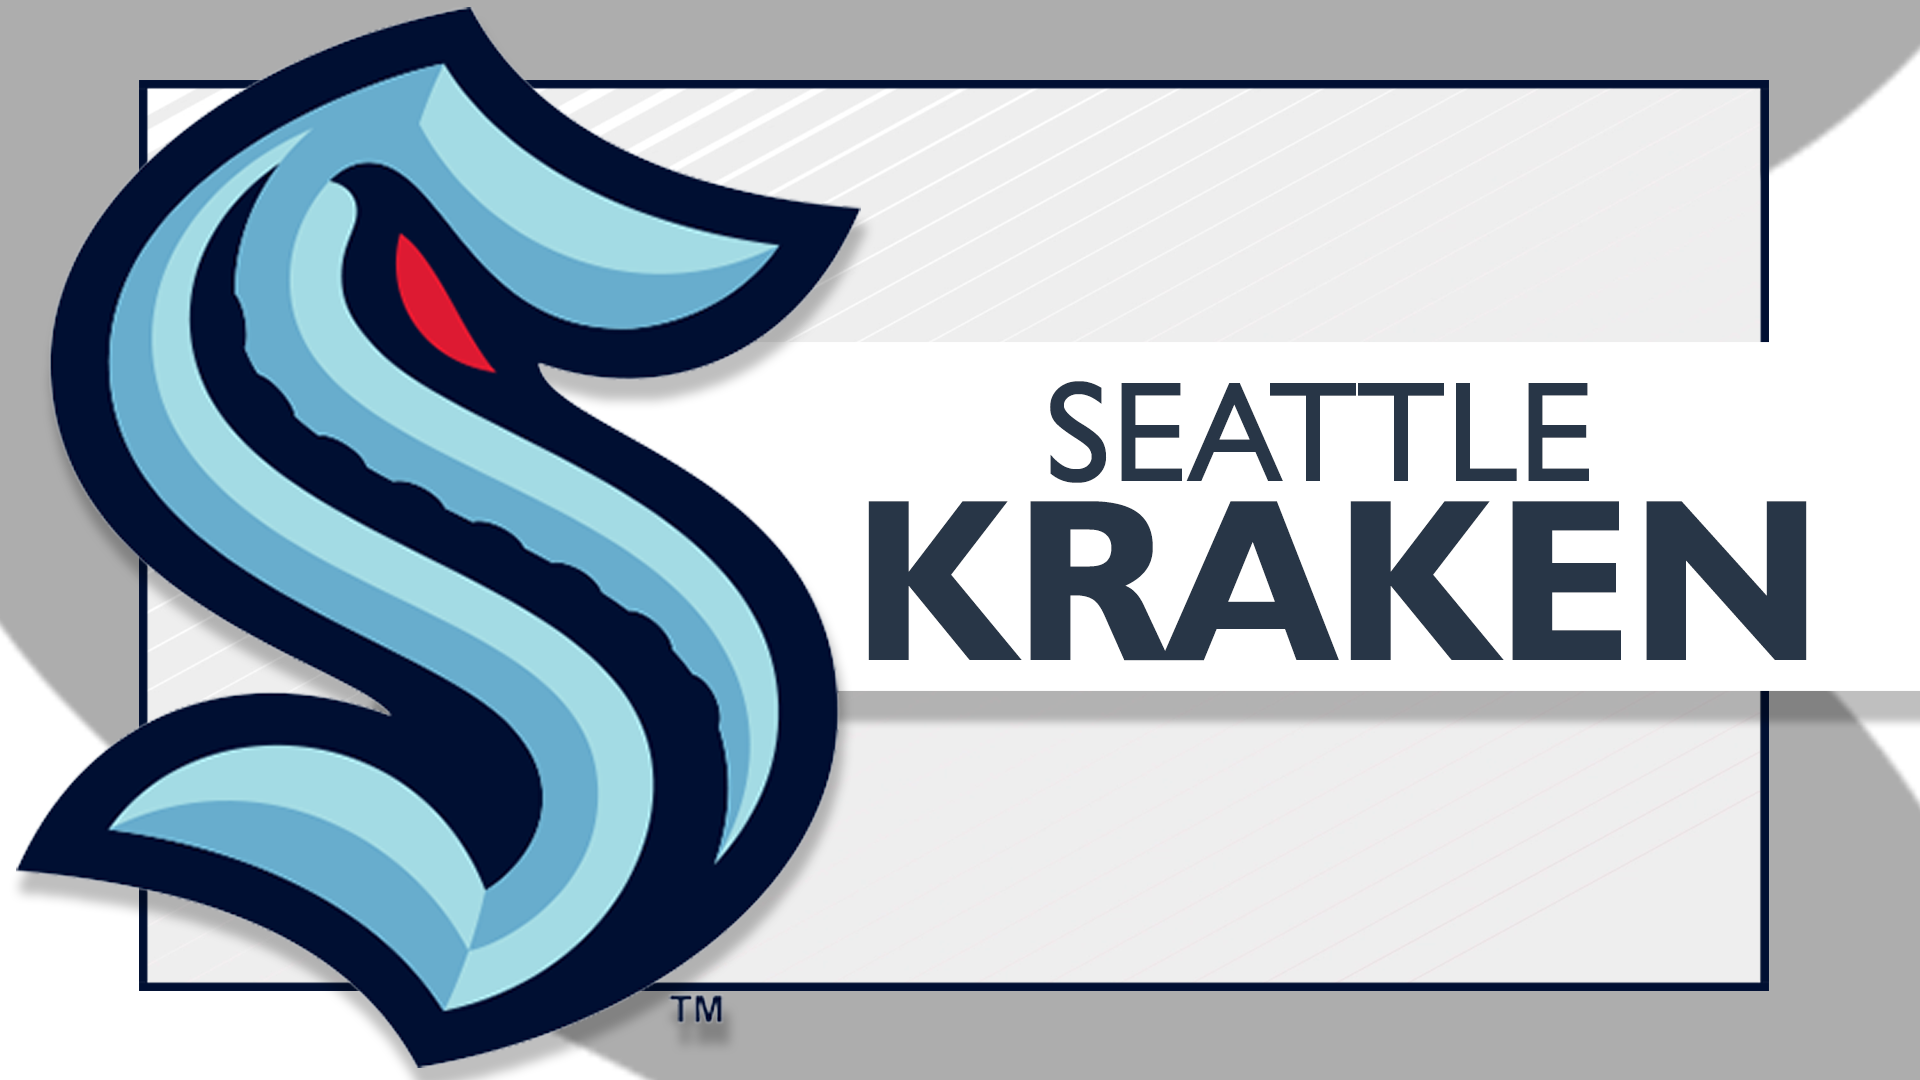 Seattle Kraken introduce team dog, Davy Jones